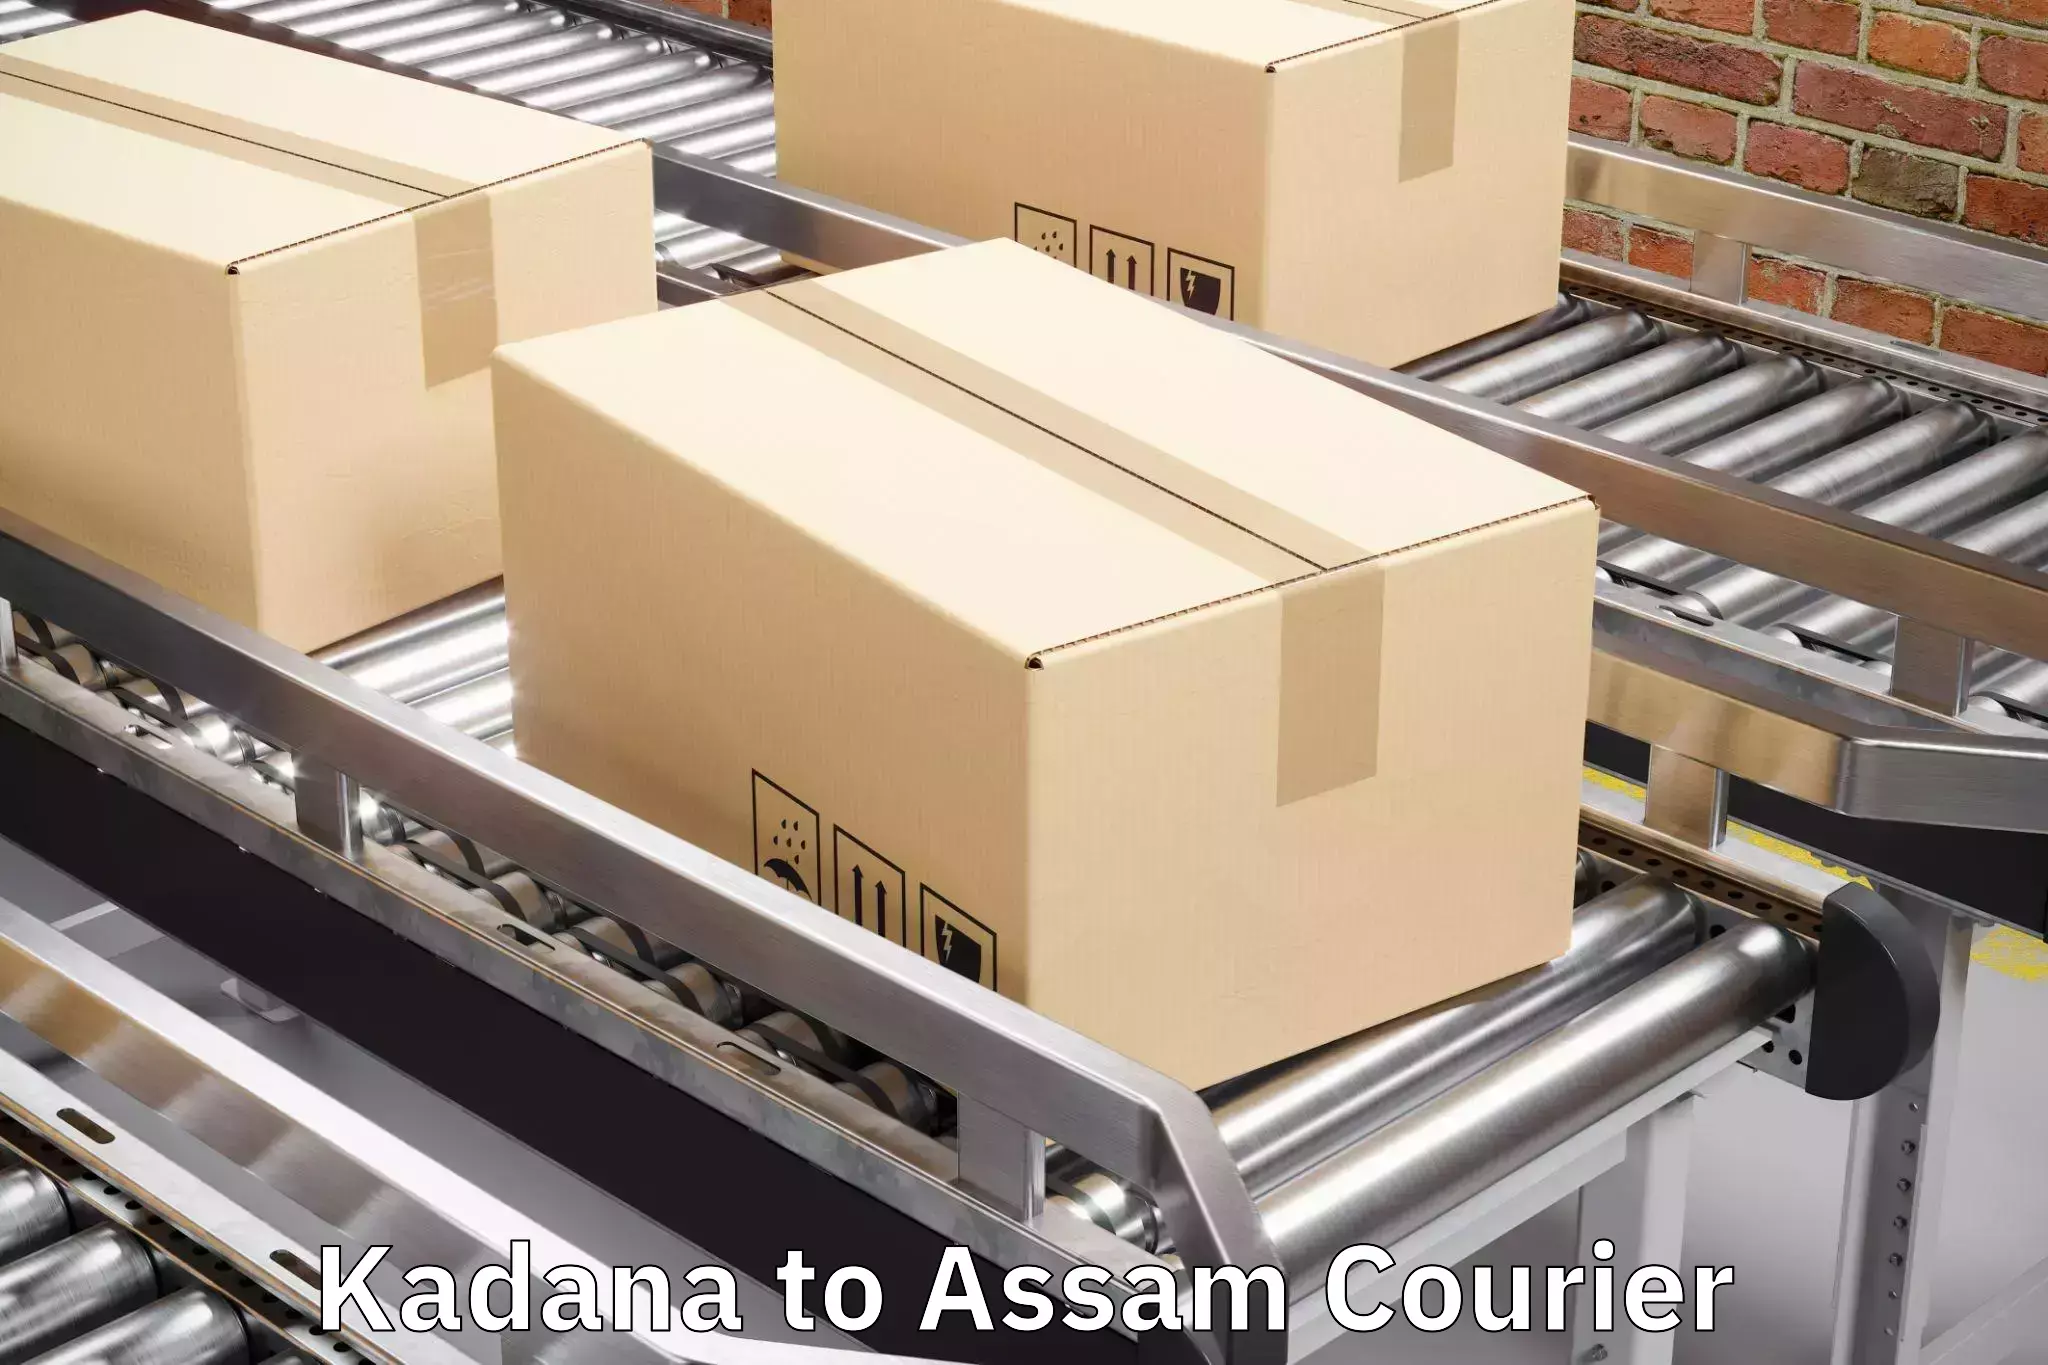 Luggage transport company Kadana to Lakhipur